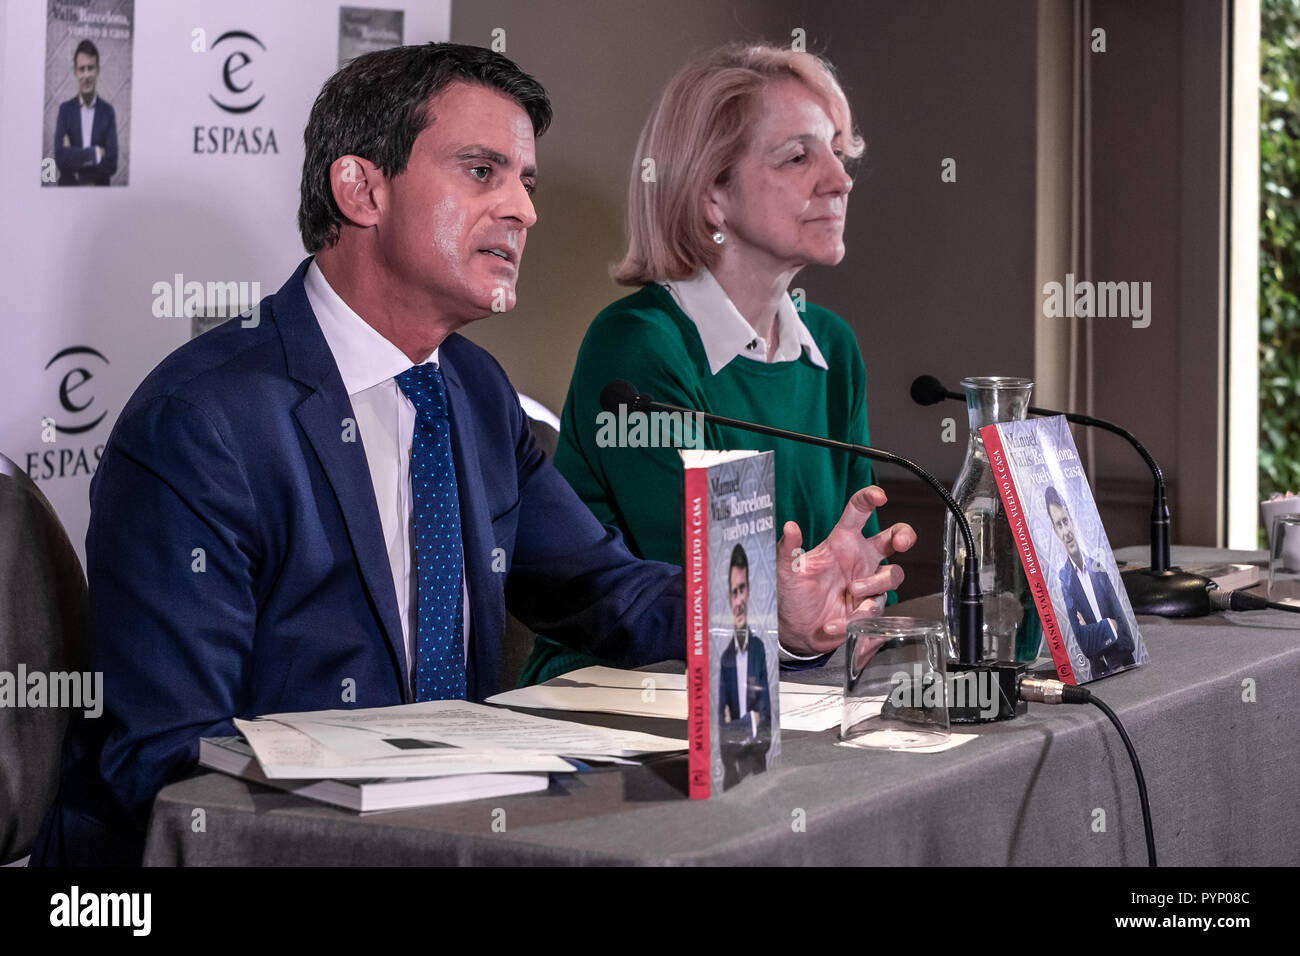 Manuel Valls se considera la presentación de su nuevo libro junto a Ana  Rosa Semprún, director de la Editorial Espasa. Manuel Valls, nacido en  Barcelona y ex primer ministro de Francia, y a